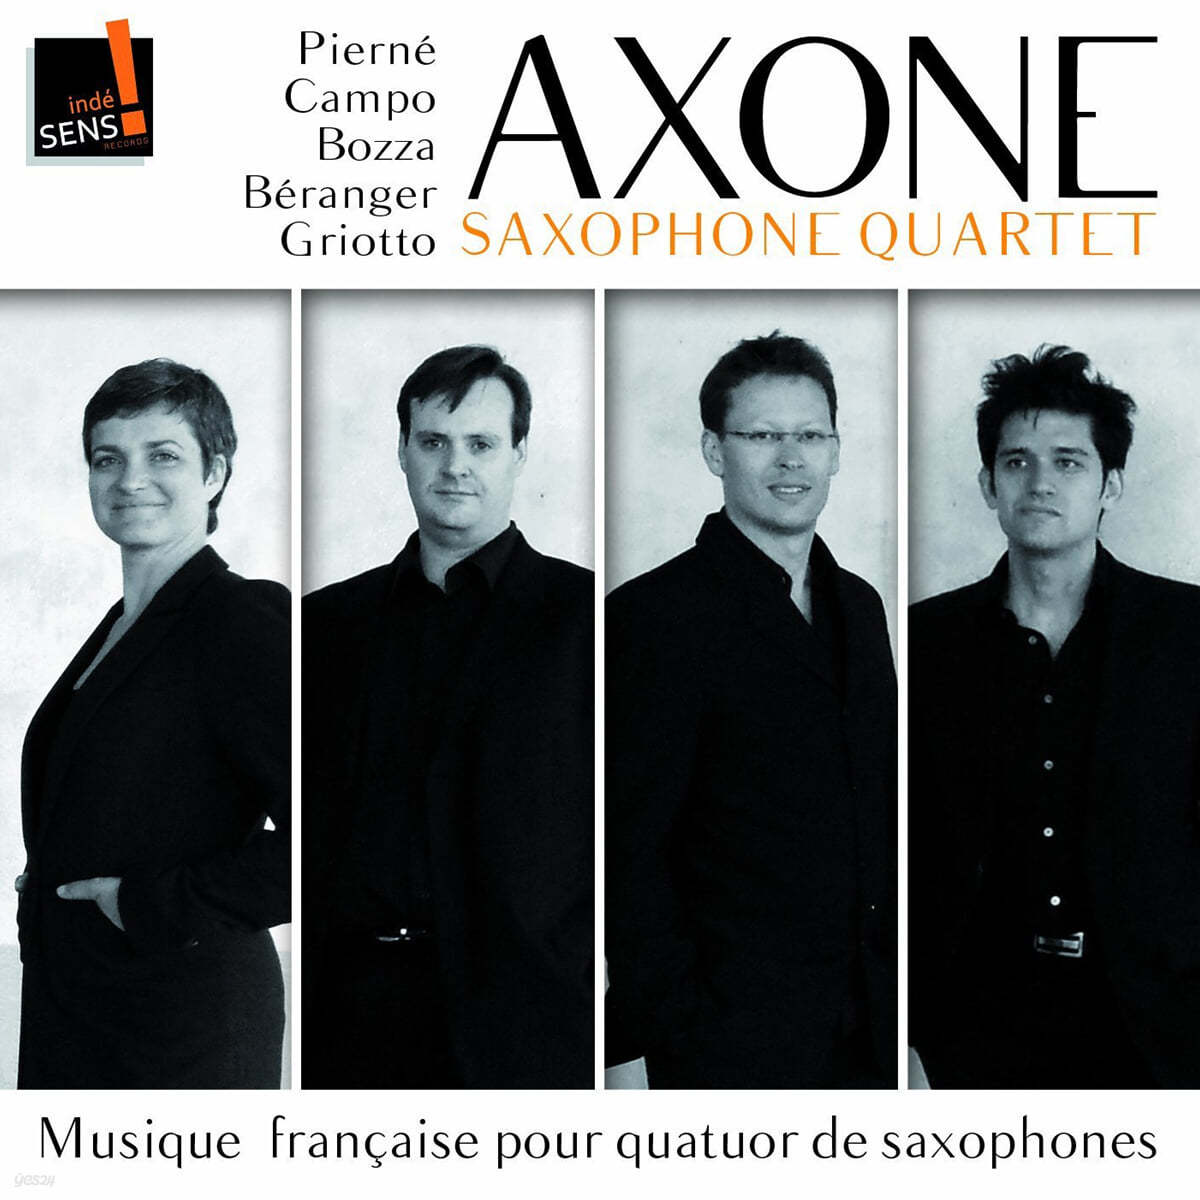 Axone Saxophone Quartet 색소폰 사중주를 위한 프랑스 음악 (Musique Francaise Pour Quatuor De Saxophones) 